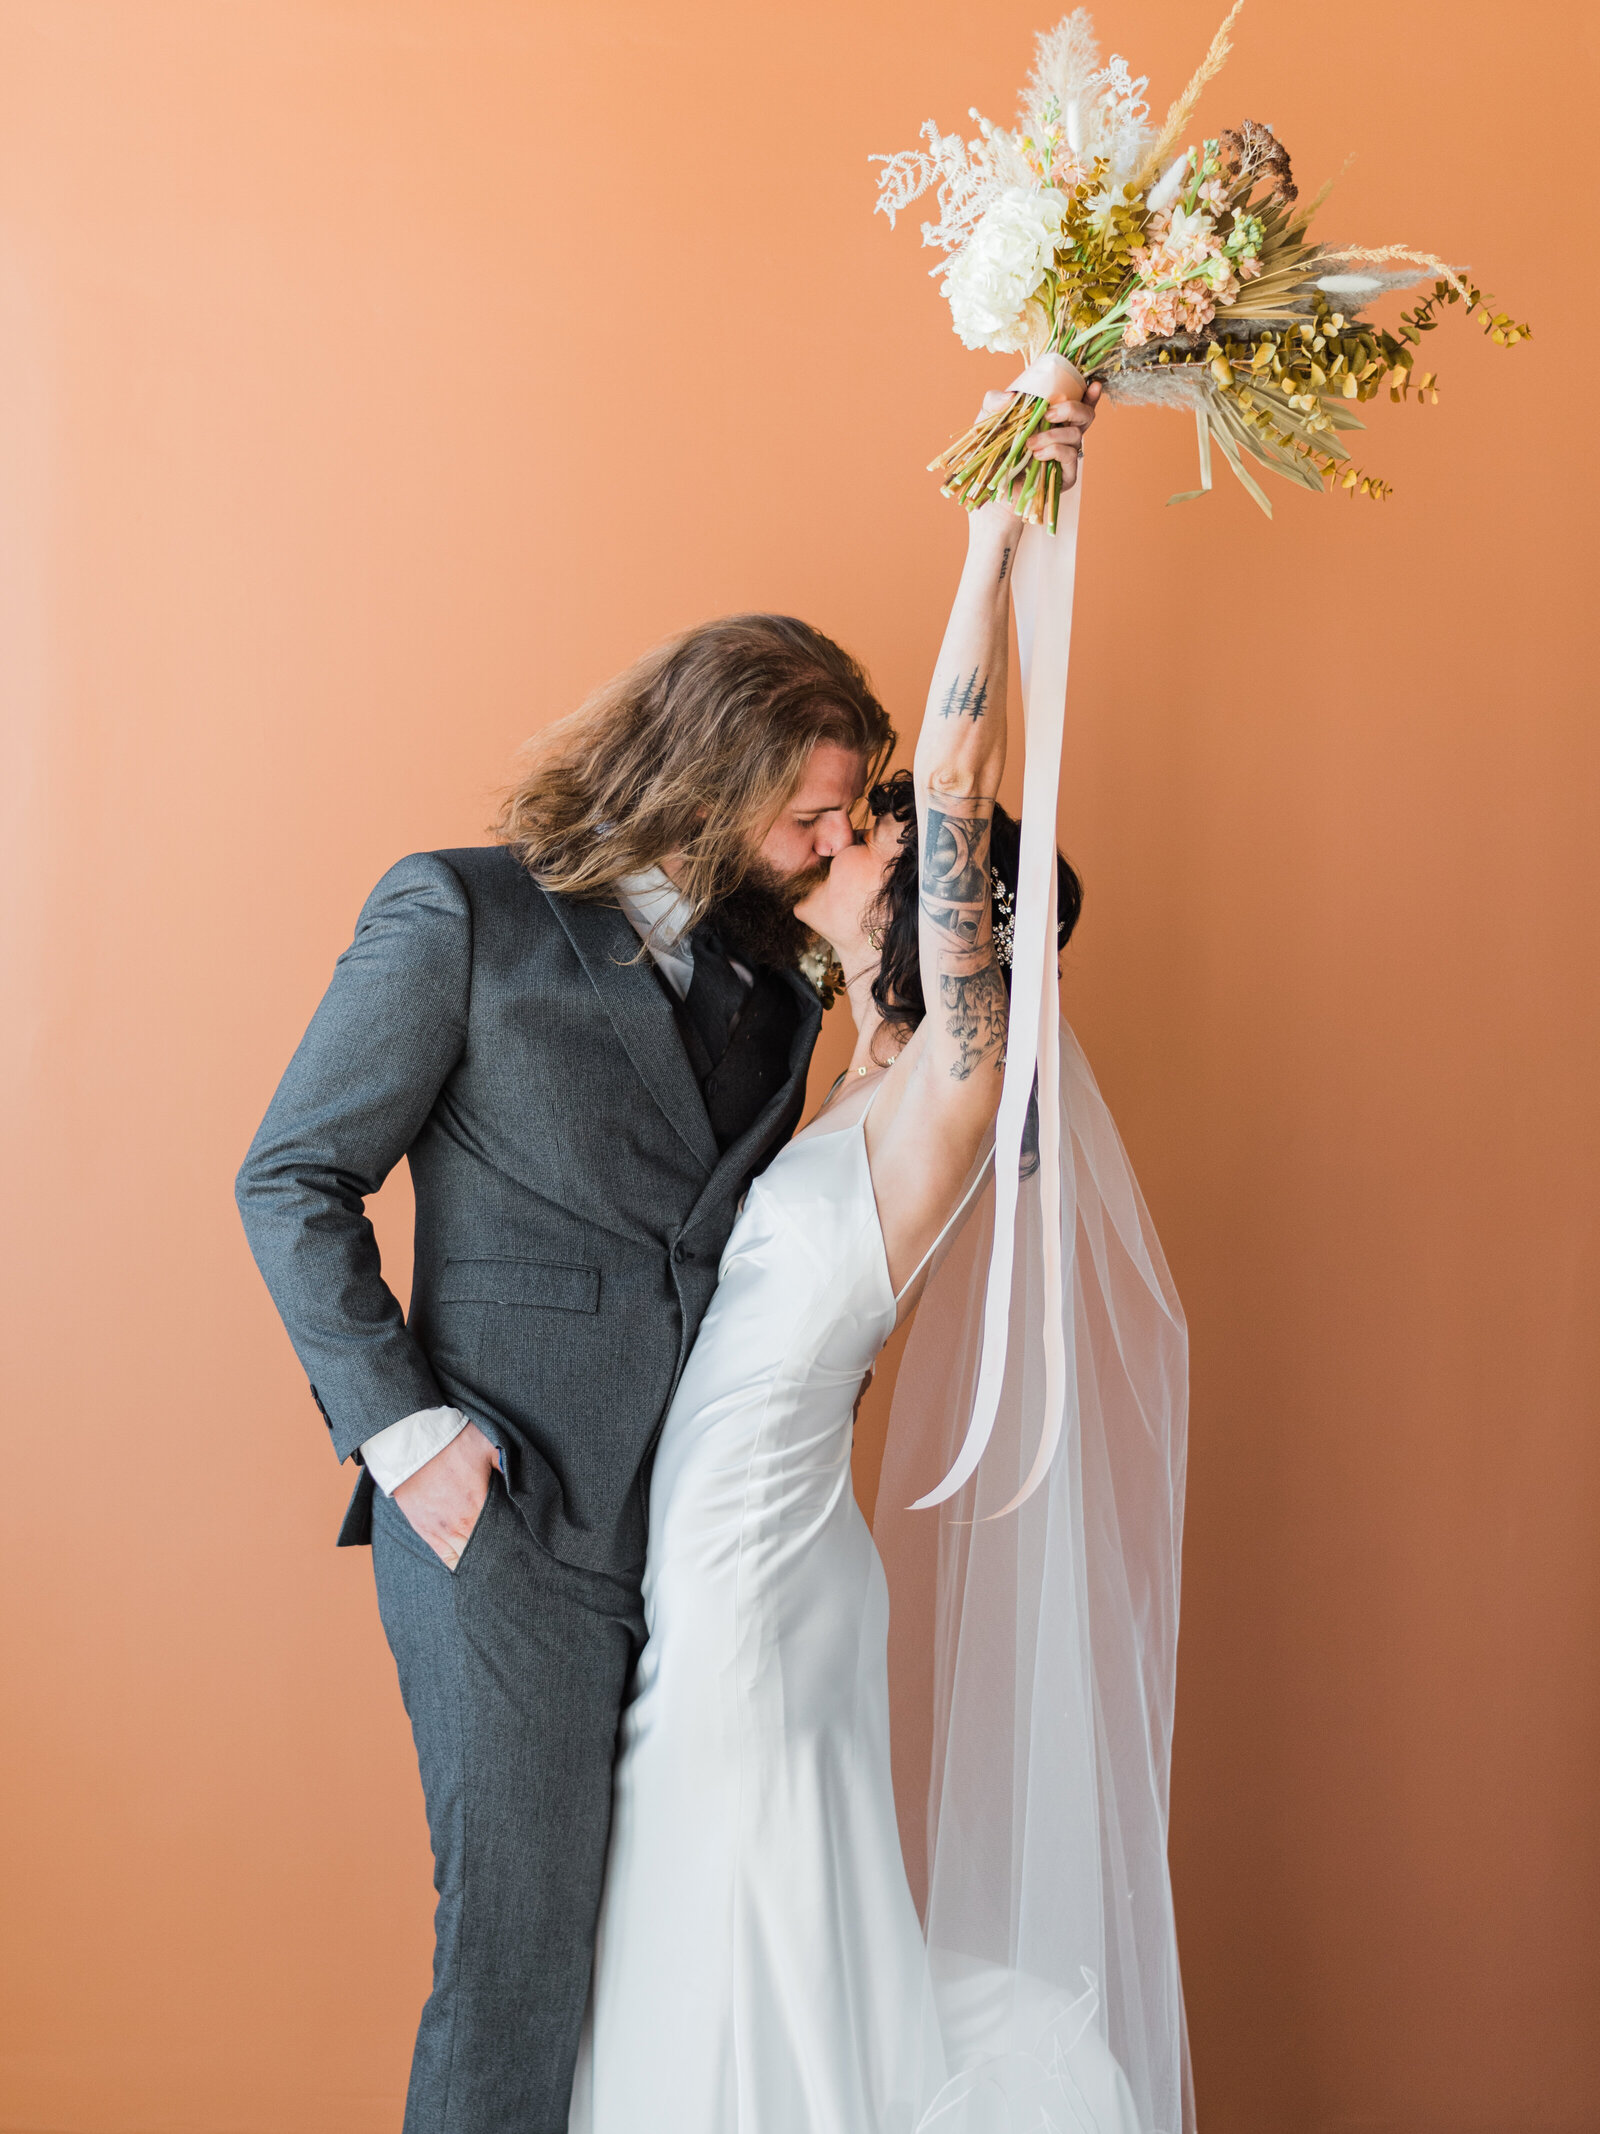 Bride and Groom celebrating together by Denver Wedding photographer